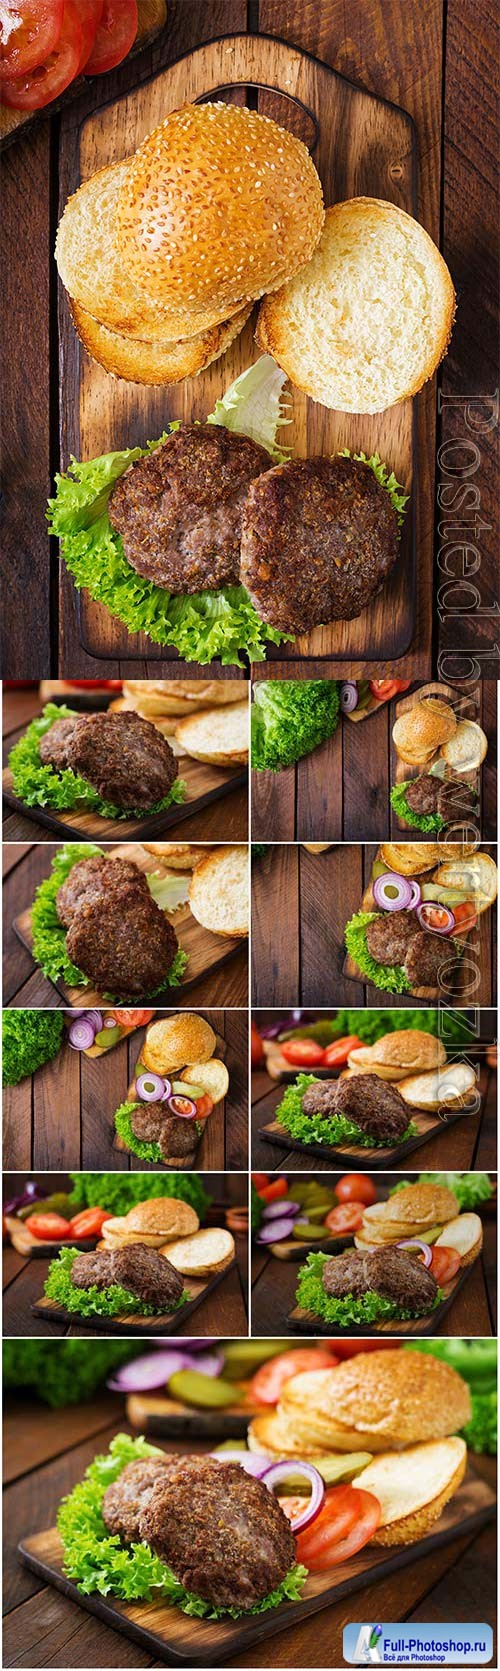 Cooking hamburger stock photo